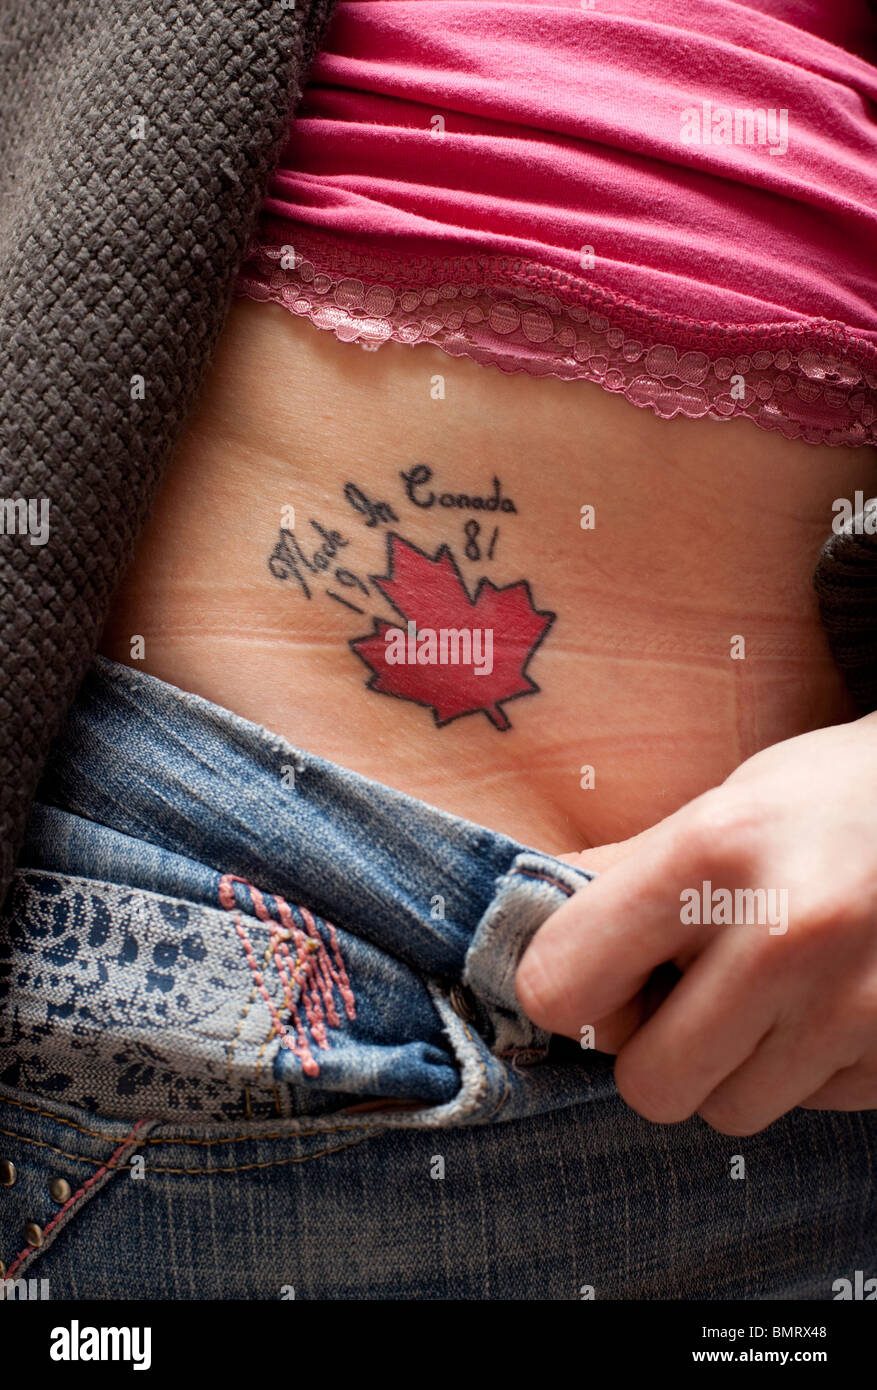 Ein sexy Tattoo in der Leiste einer Frau Stockfotografie - Alamy